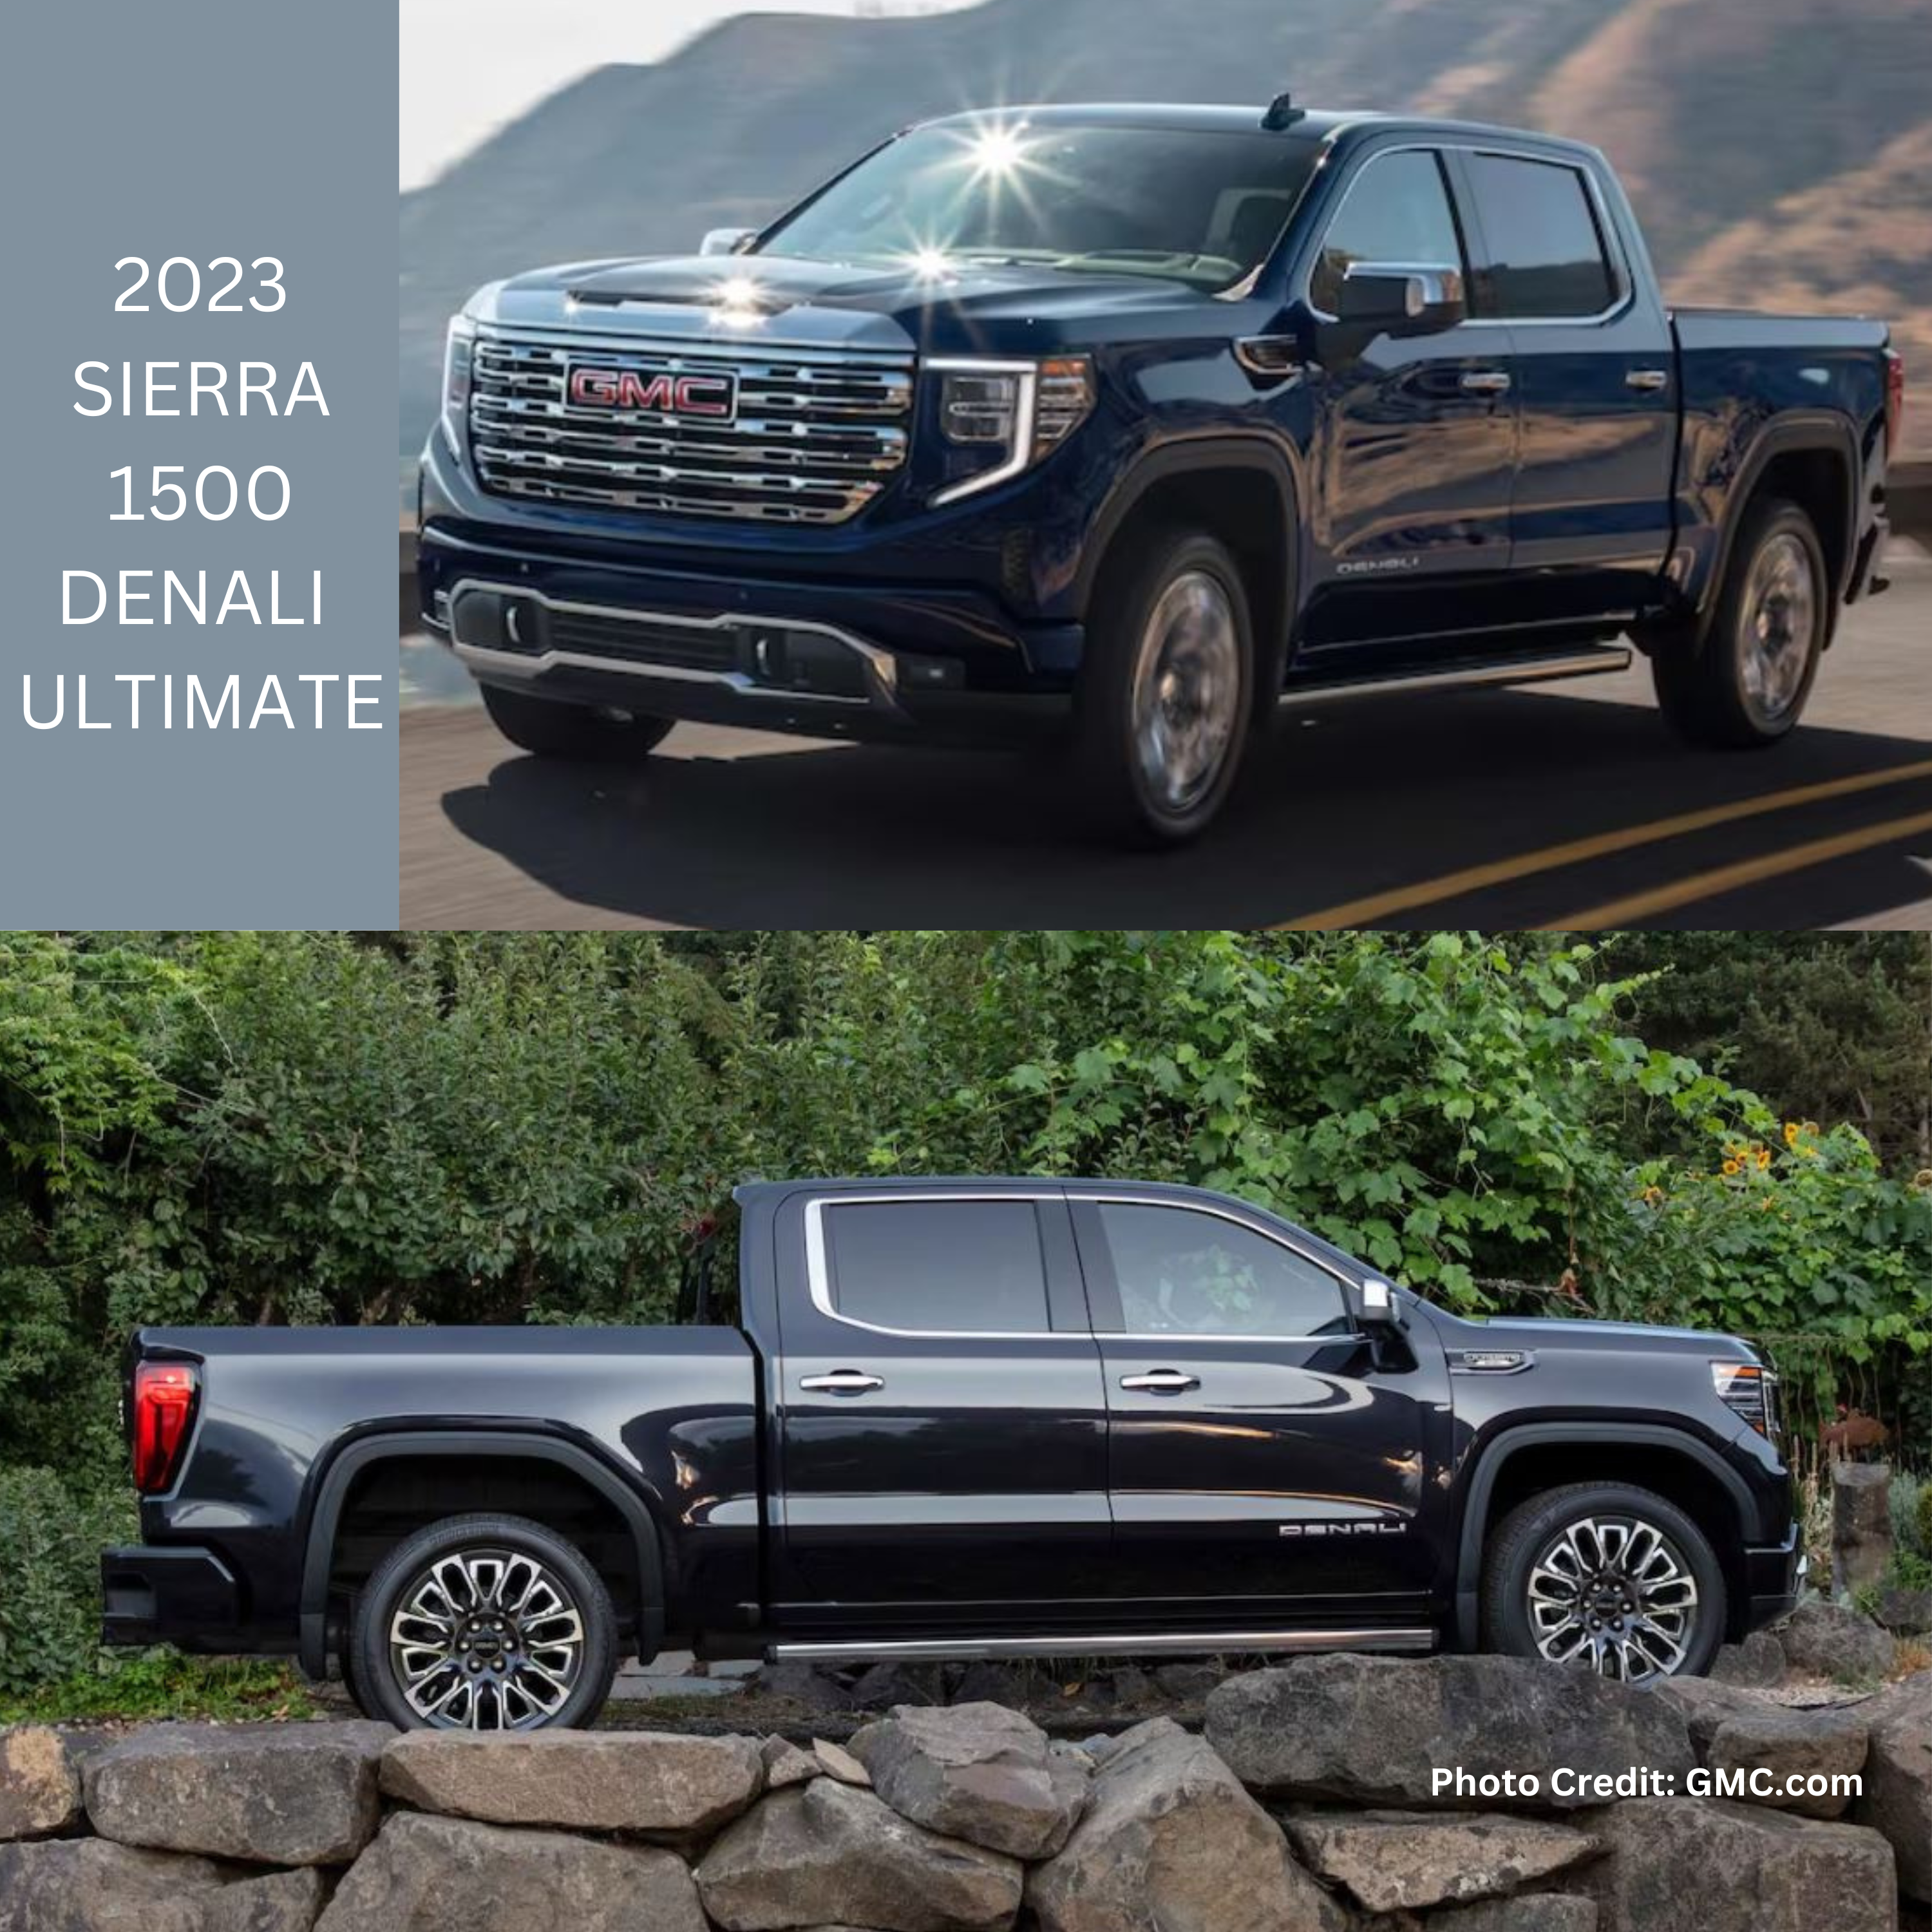 2023 Sierra 1500 Denali Ultimate Diesel